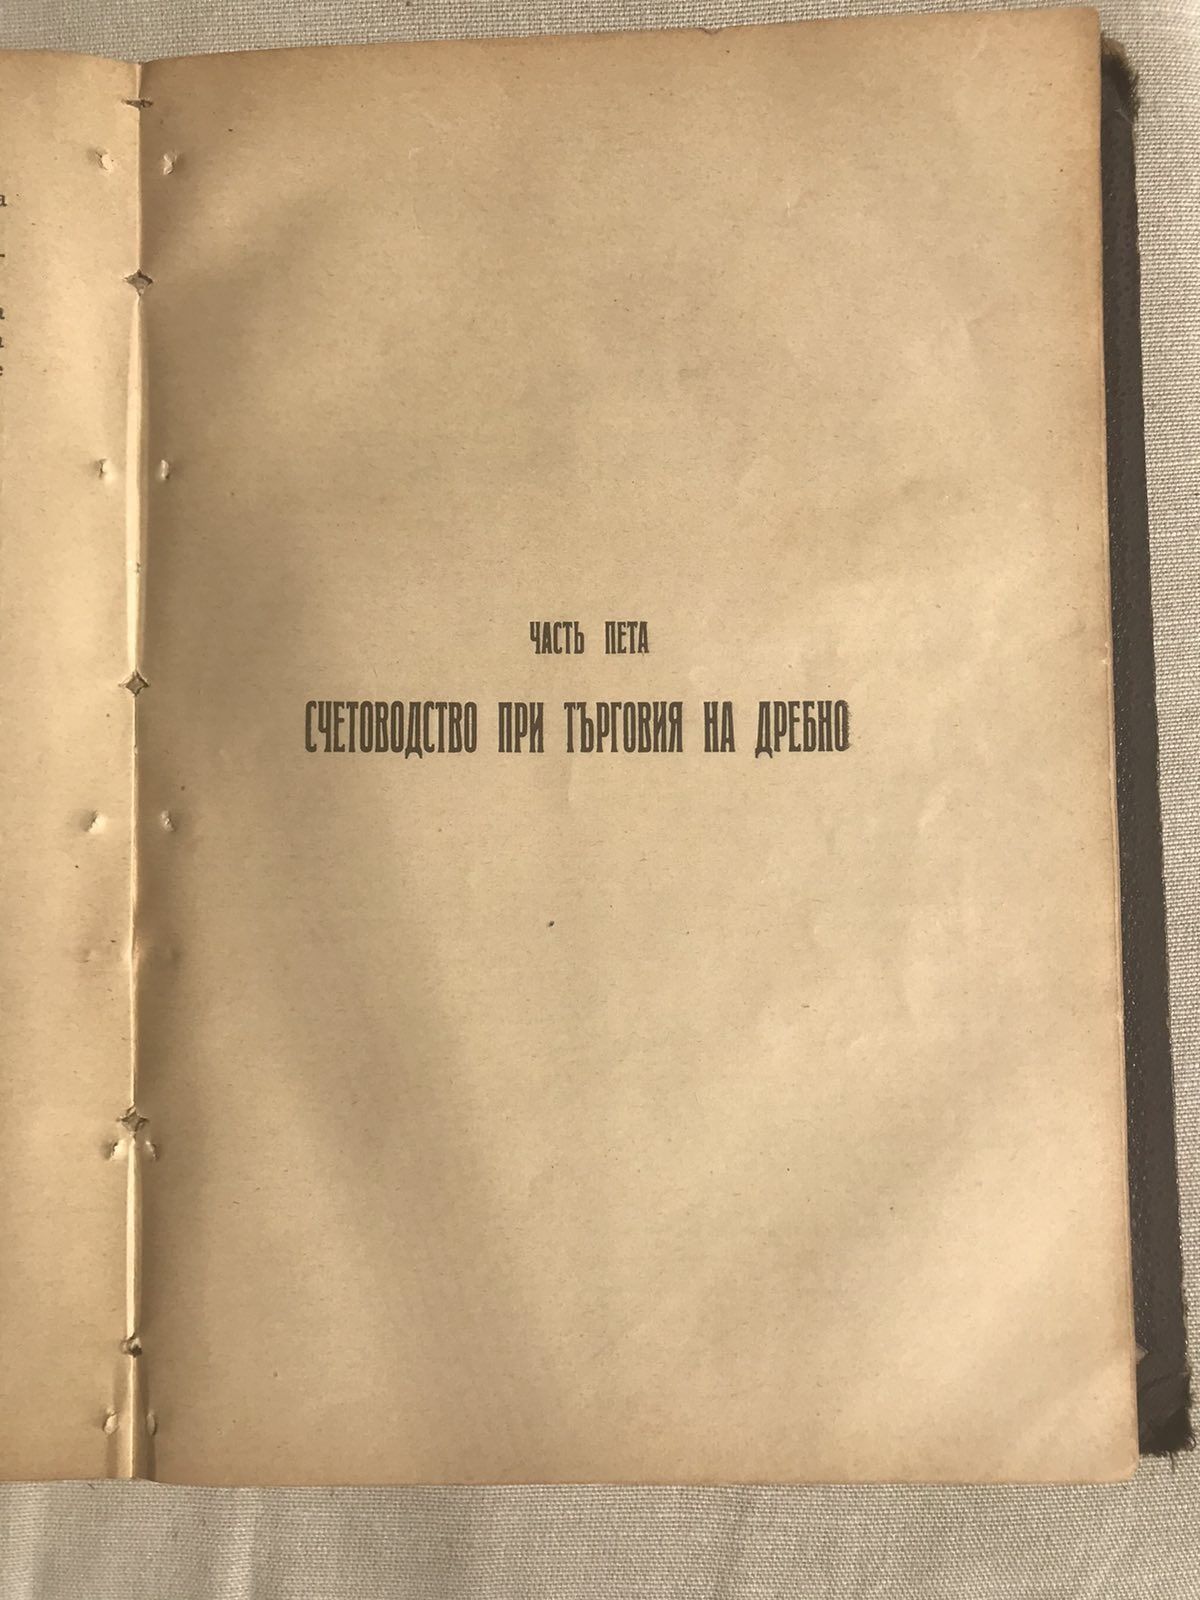 Антикварен - Учебникъ по литература - из. 1919